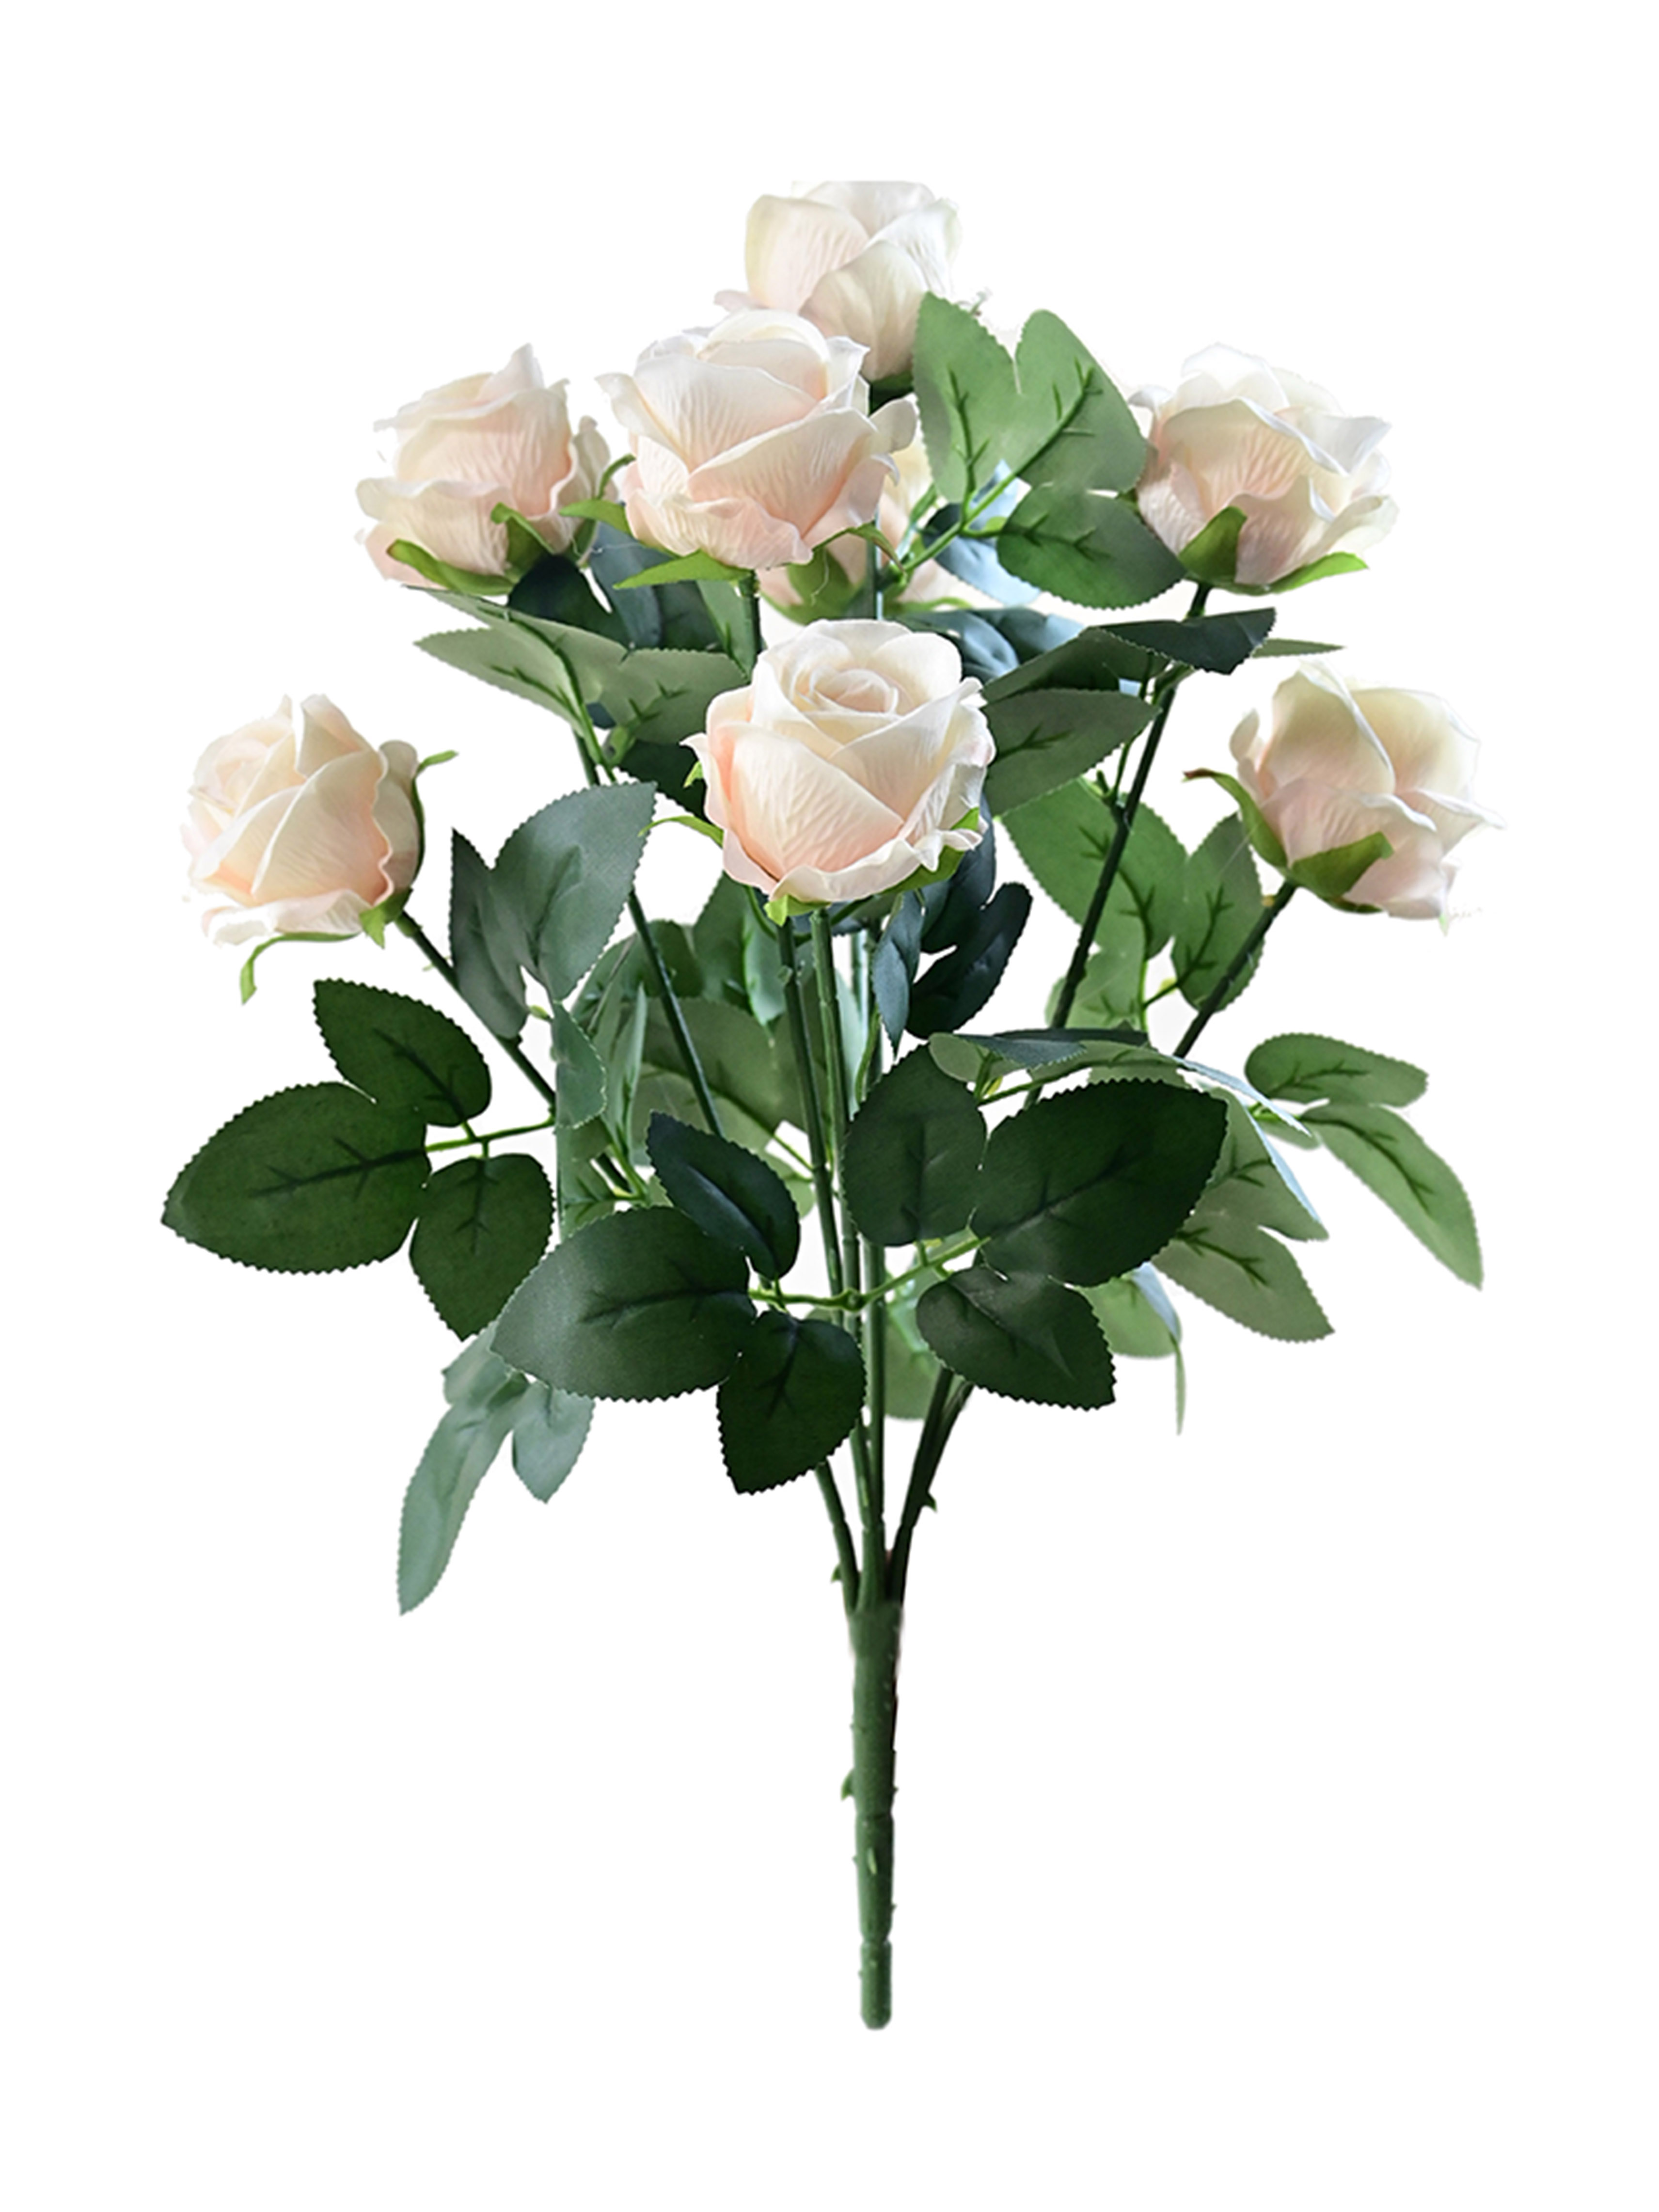 Flor de Rosa Artificial, 9 cabezas, rosas de imitación, flor de terciopelo para ramos de boda, hogar, oficina, jardín, centro de mesa de fiesta, decoración